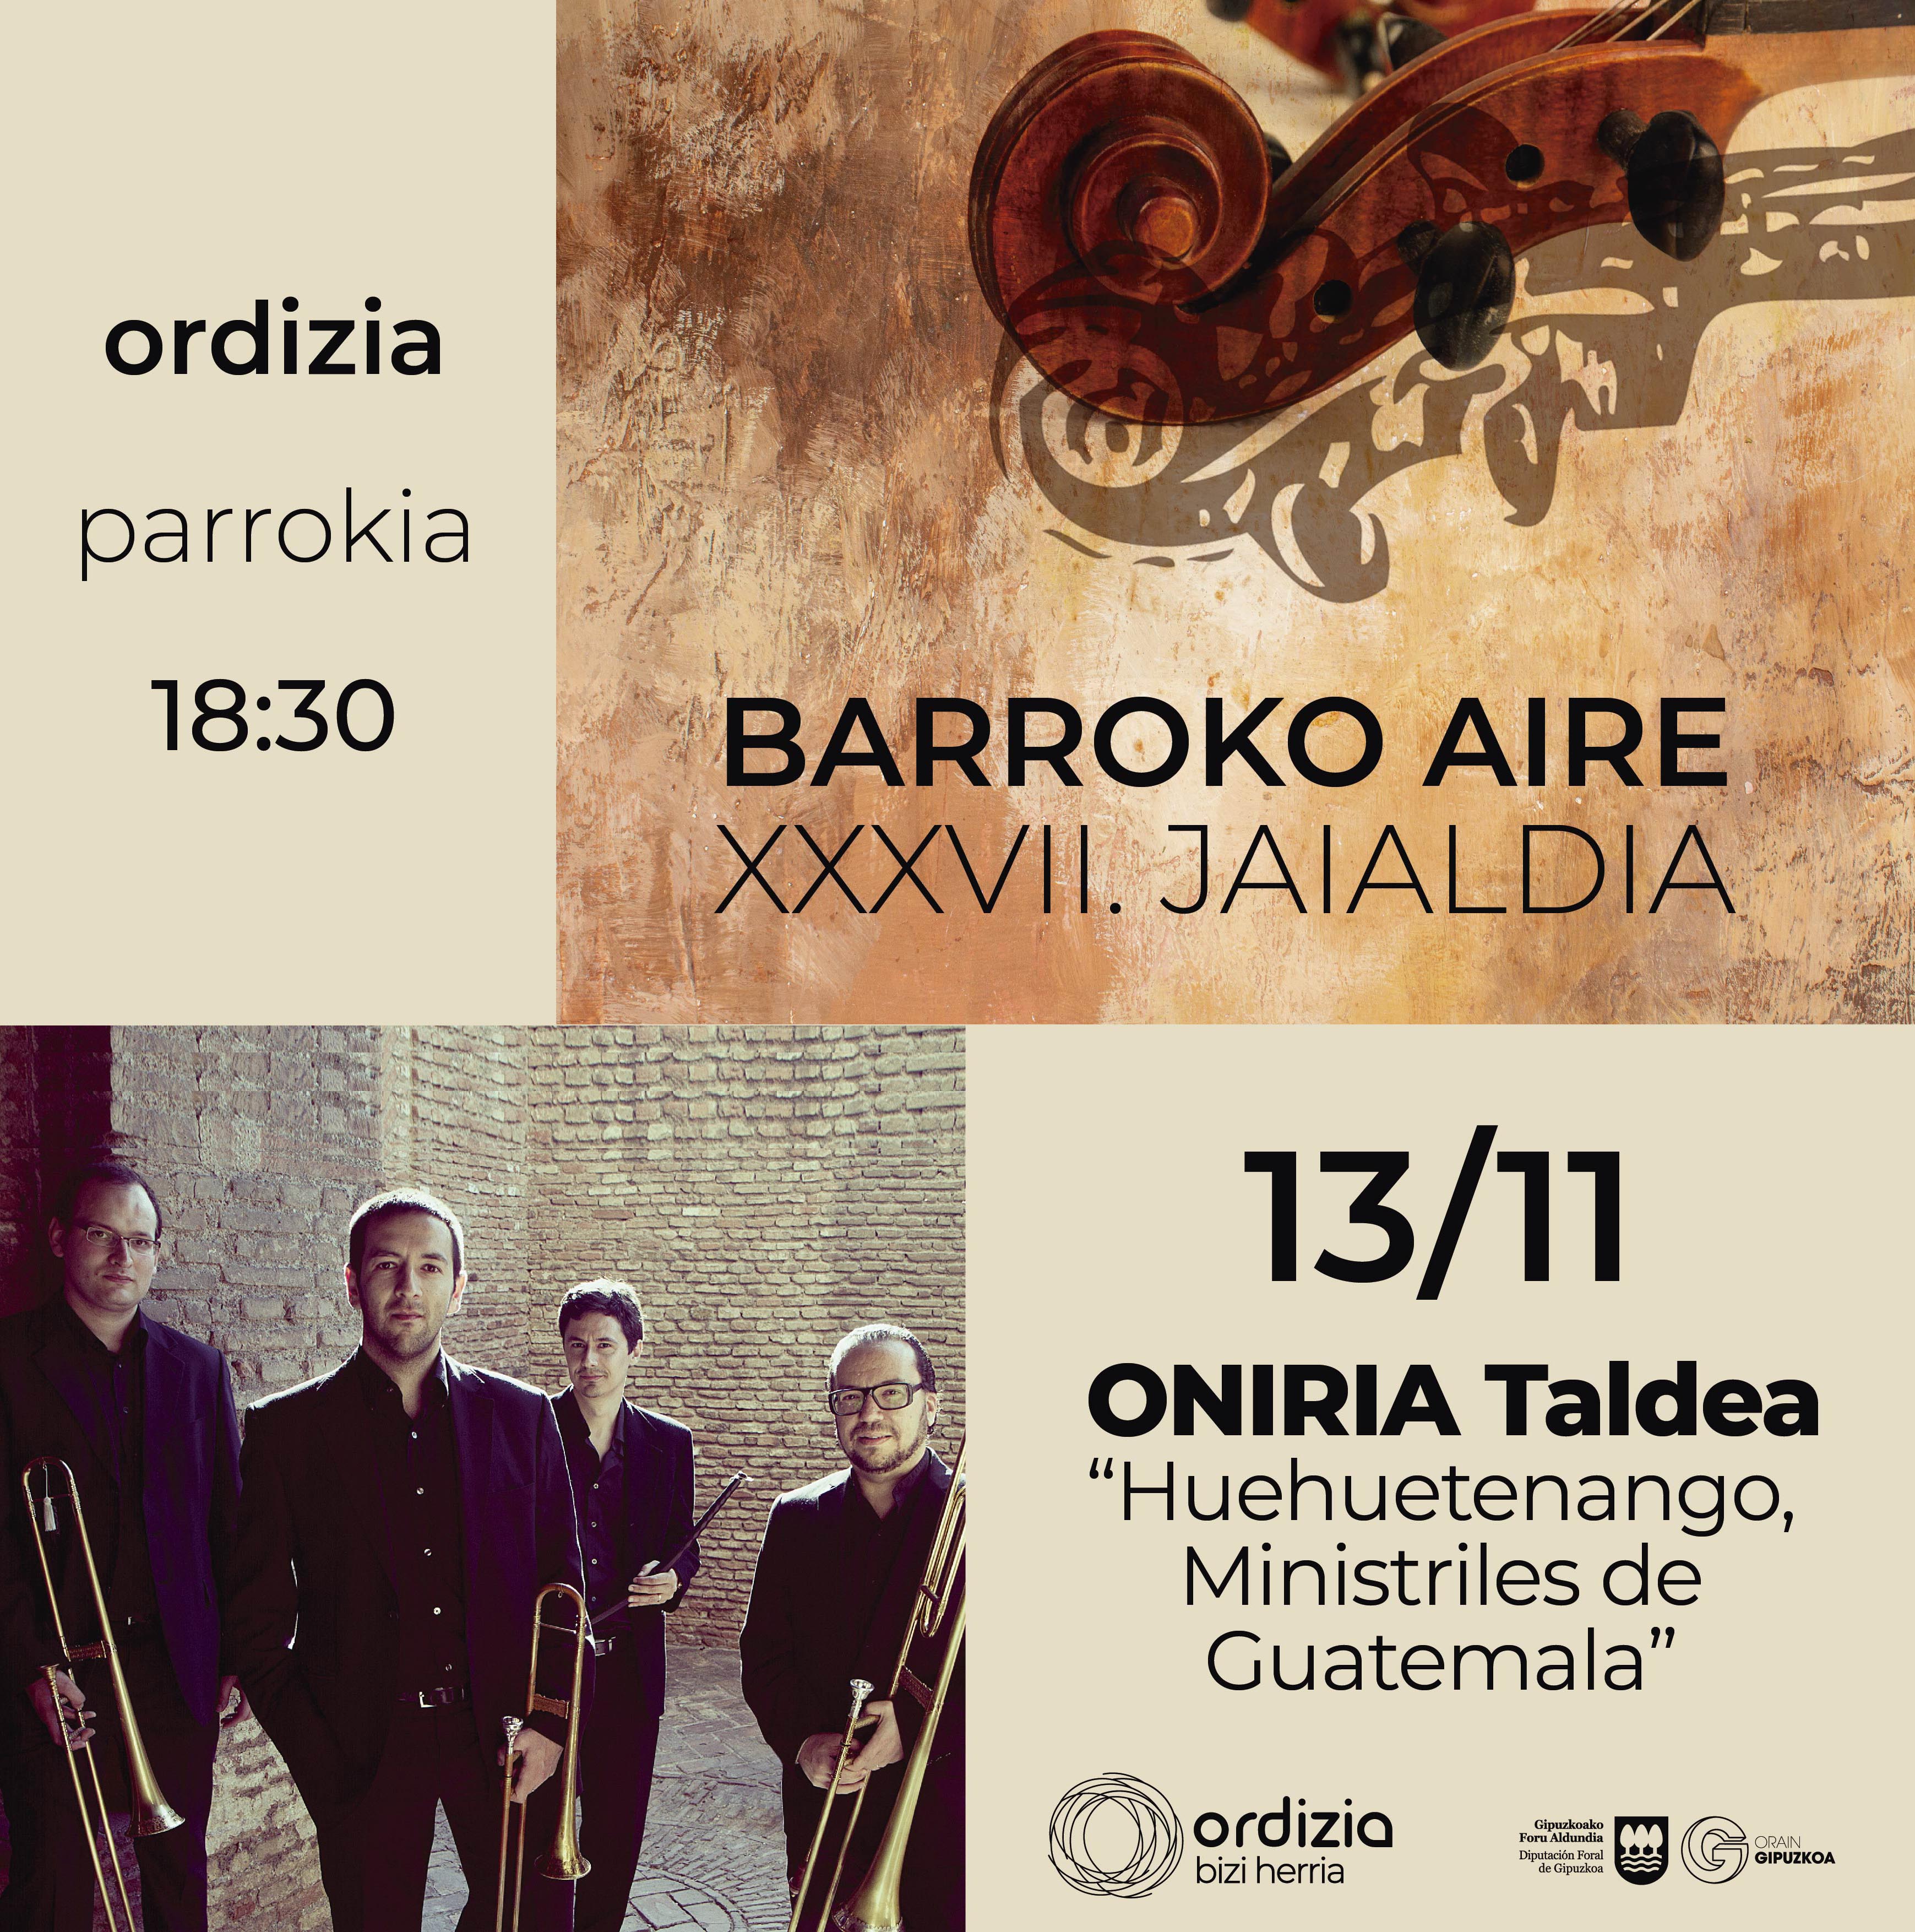 El grupo Oniria será protagonista este domingo en Barroko Aire